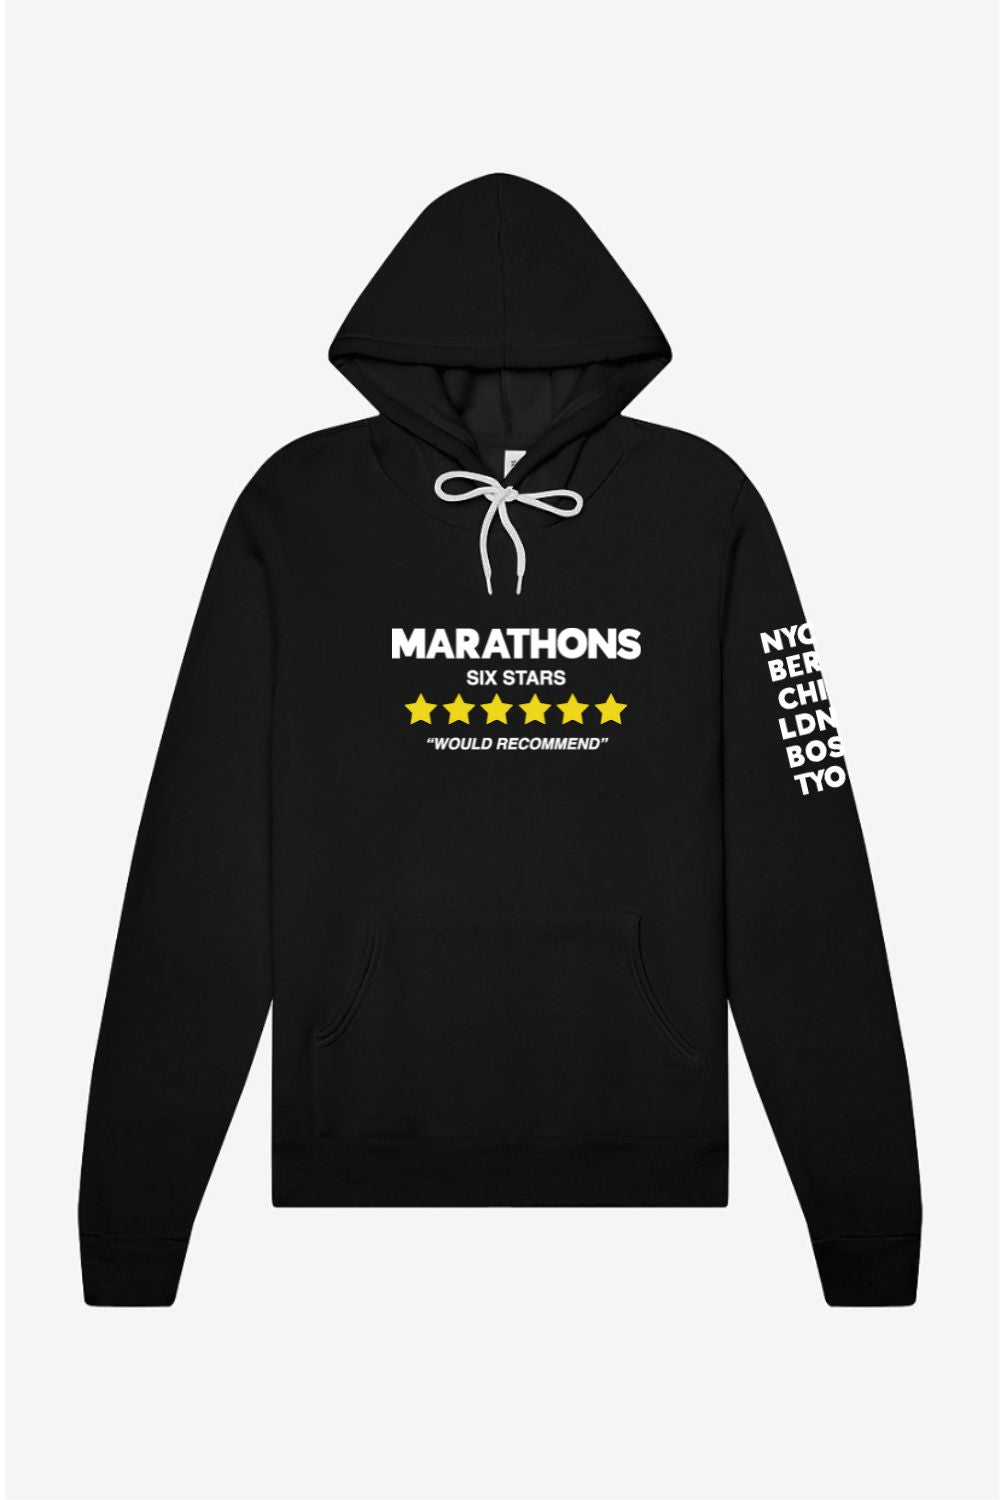 Marathons, Would Recommend Hoodie Sweatshirt